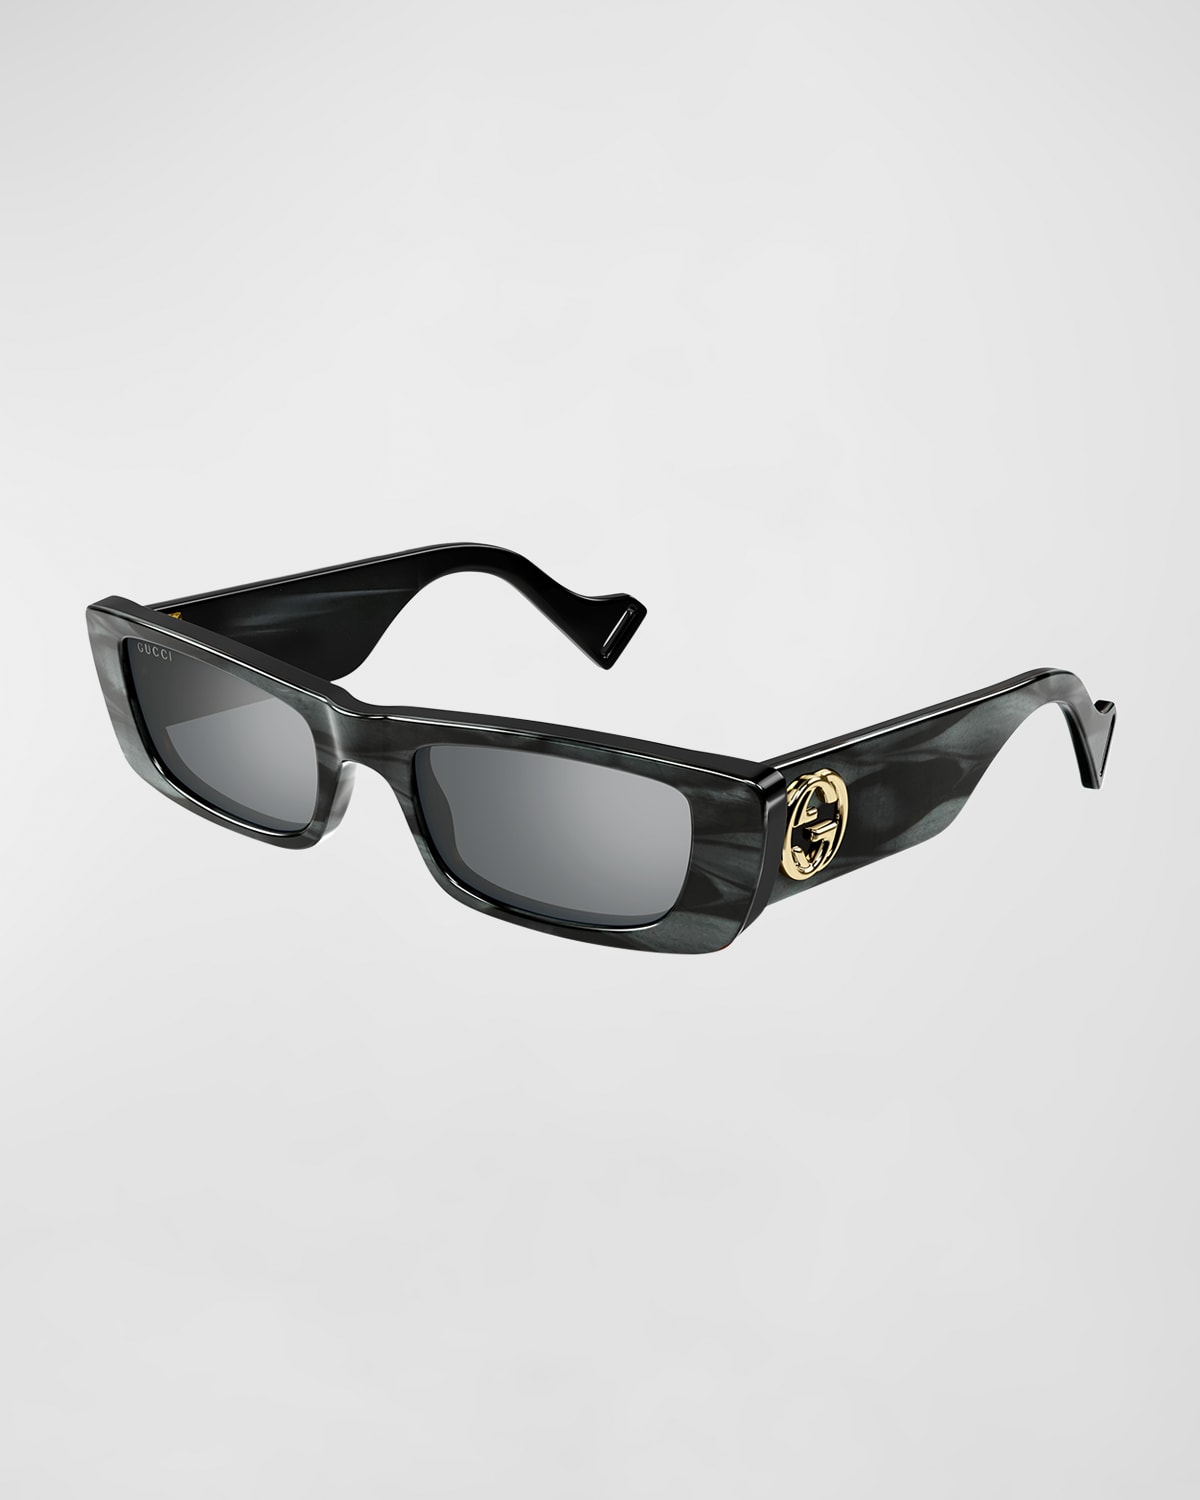 Gucci Monochromatic Rectangle Sunglasses W/ Interlocking G Temples In 013 Grey